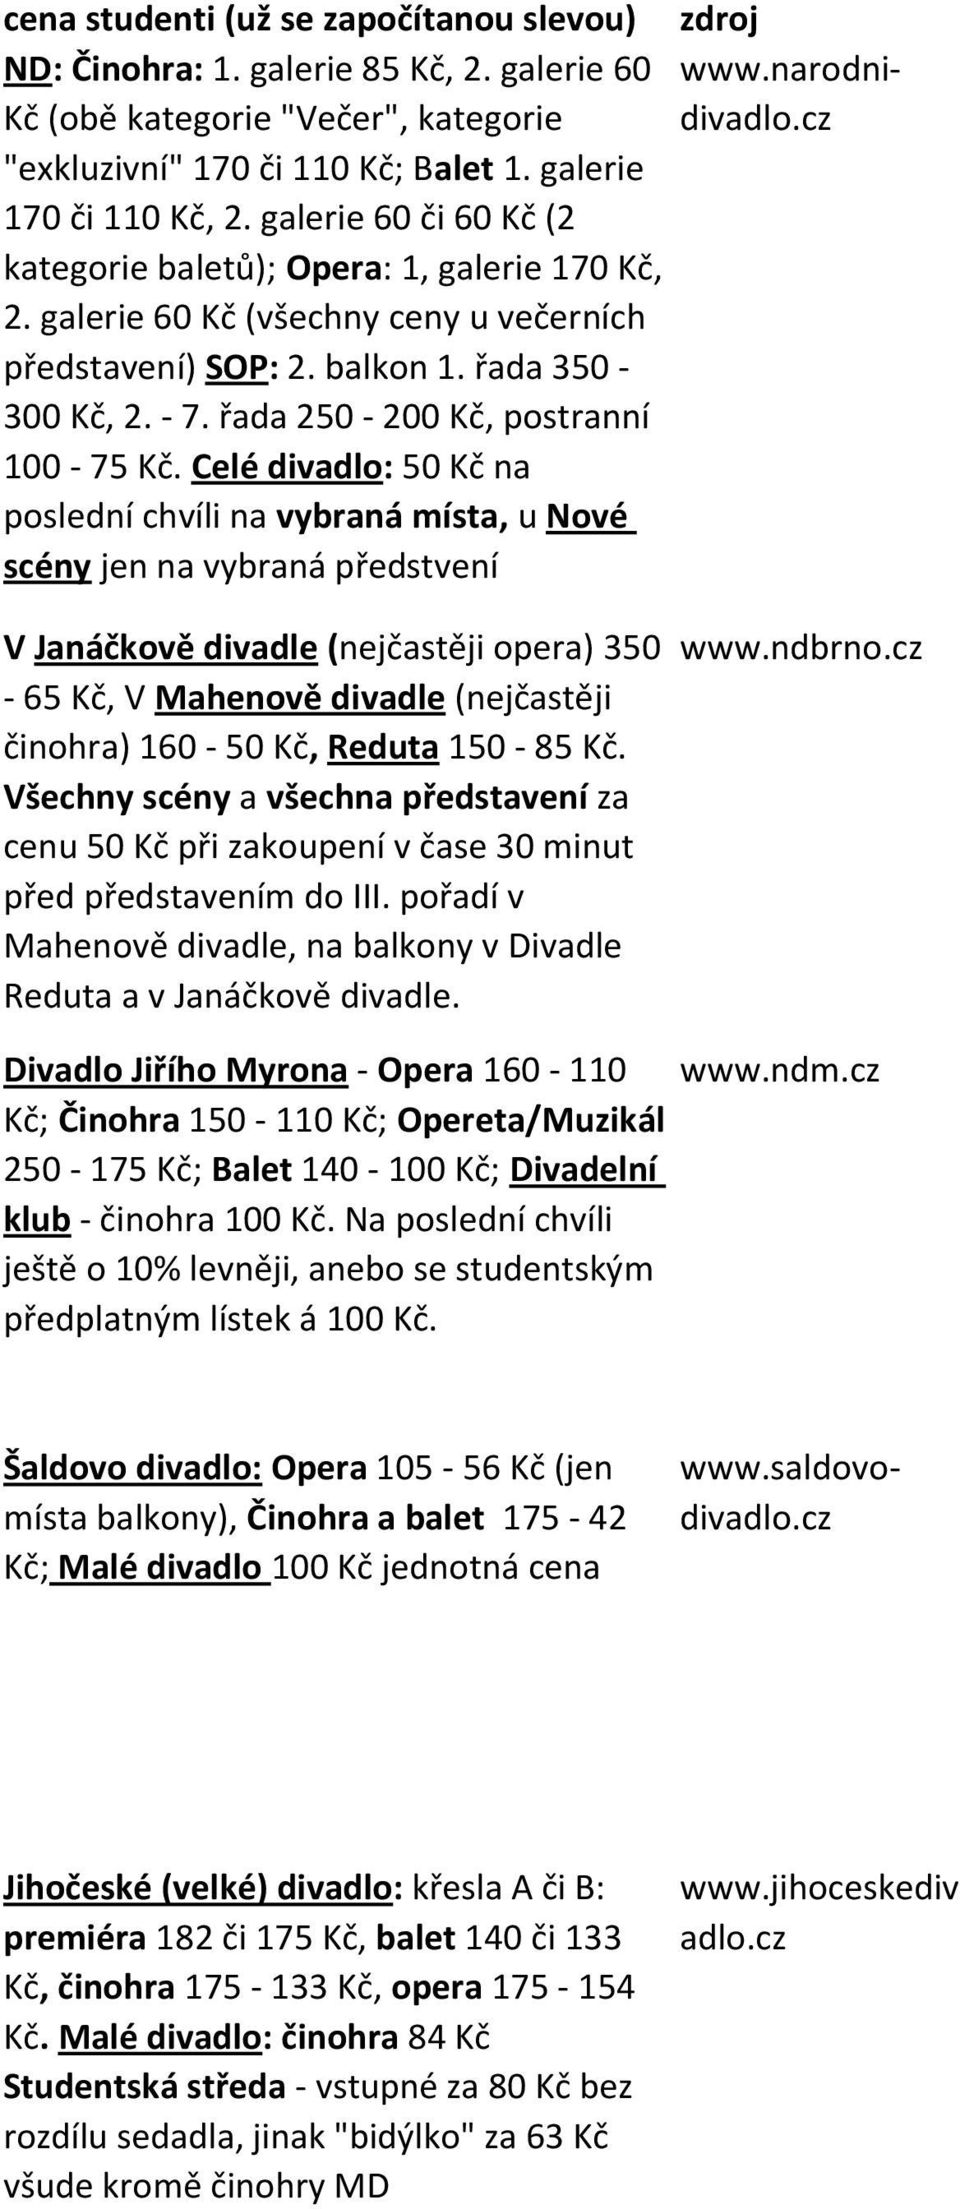 cz Divadlo Jiřího Myrona - Opera 160-110 www.ndm.cz Kč; Činohra 150-110 Kč; Opereta/Muzikál 250-175 Kč; Balet 140-100 Kč; Divadelní klub - činohra 100 Kč.